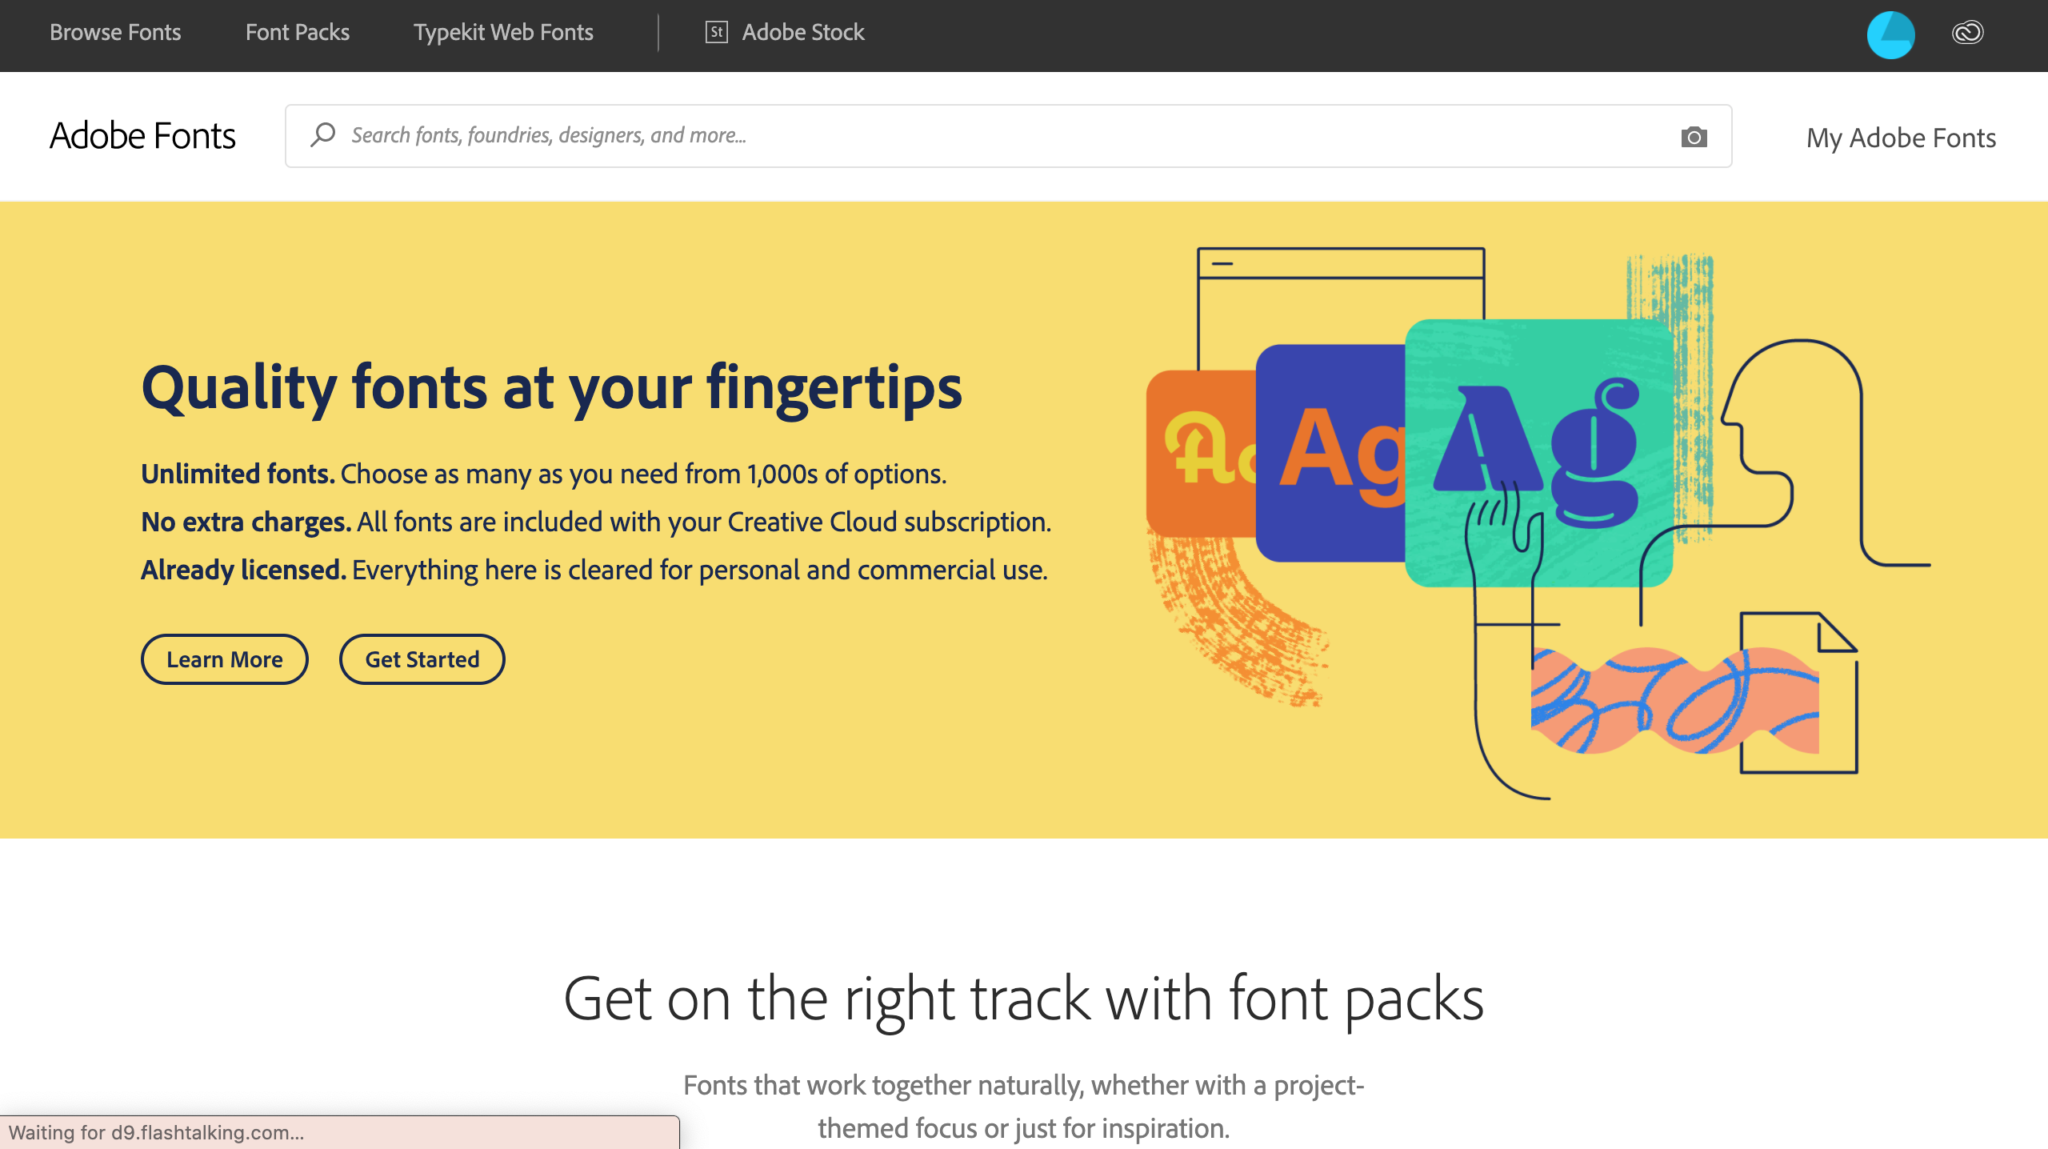 Adobe Fonts homepage screenshot 2020